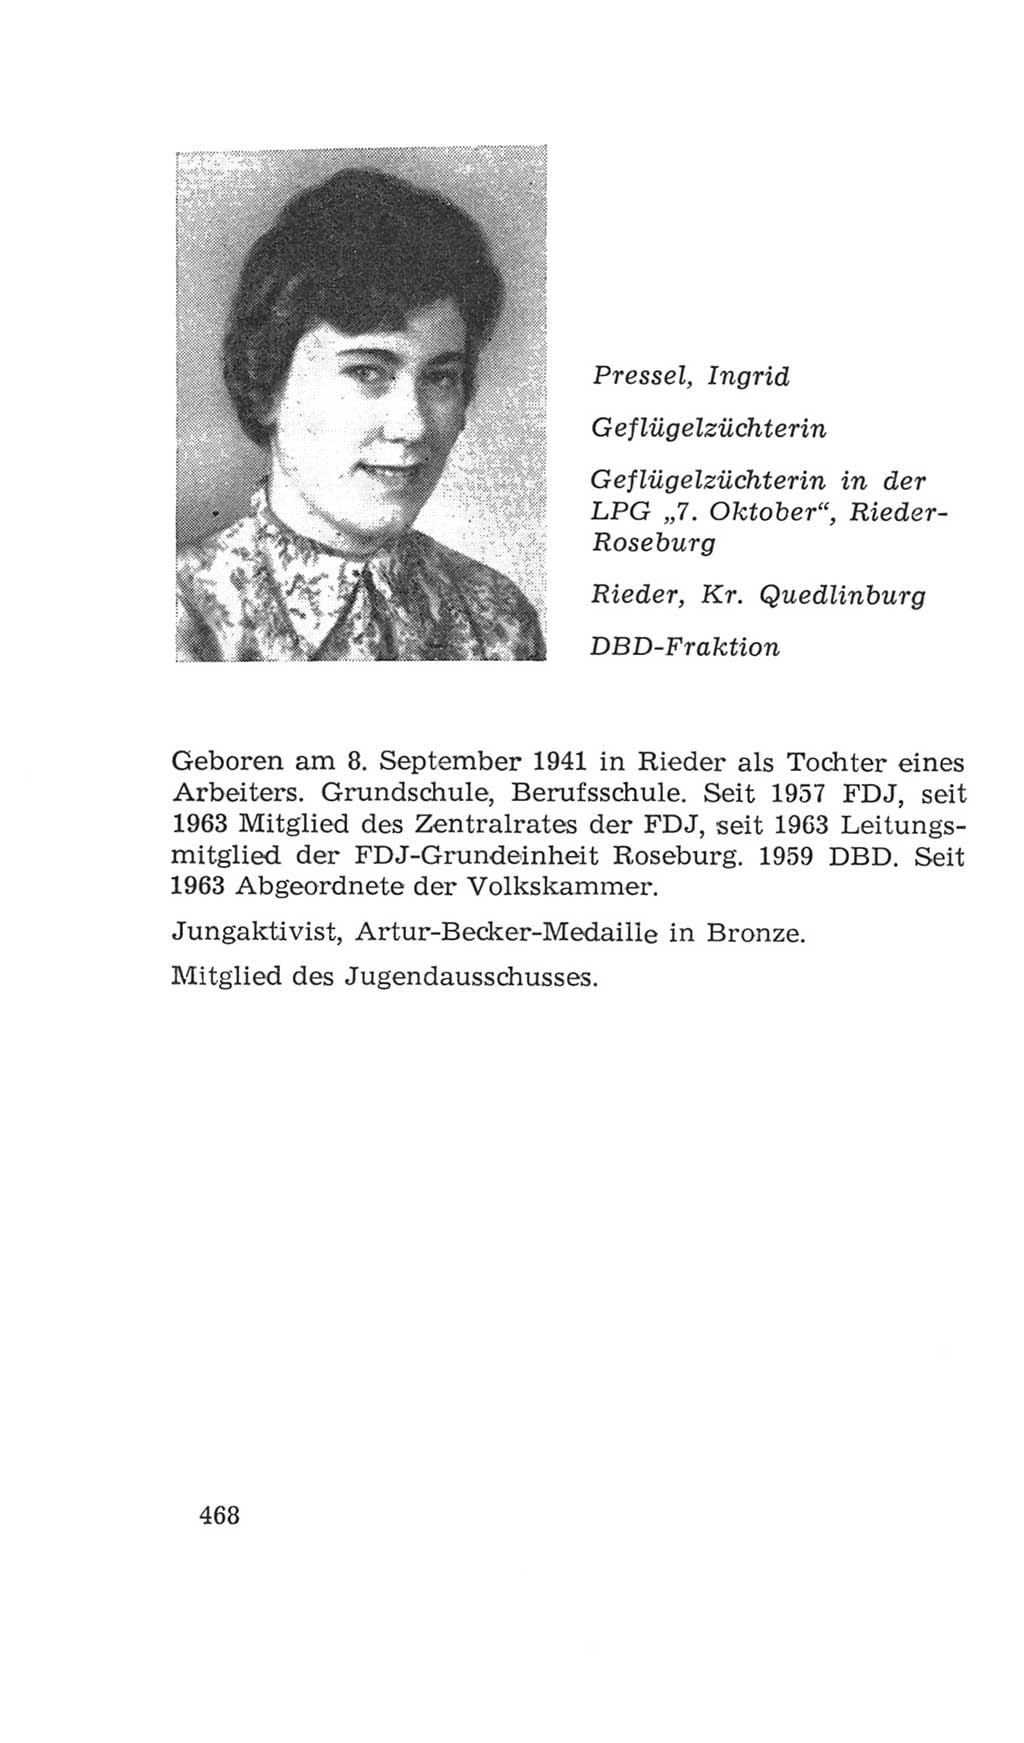 Volkskammer (VK) der Deutschen Demokratischen Republik (DDR), 4. Wahlperiode 1963-1967, Seite 468 (VK. DDR 4. WP. 1963-1967, S. 468)